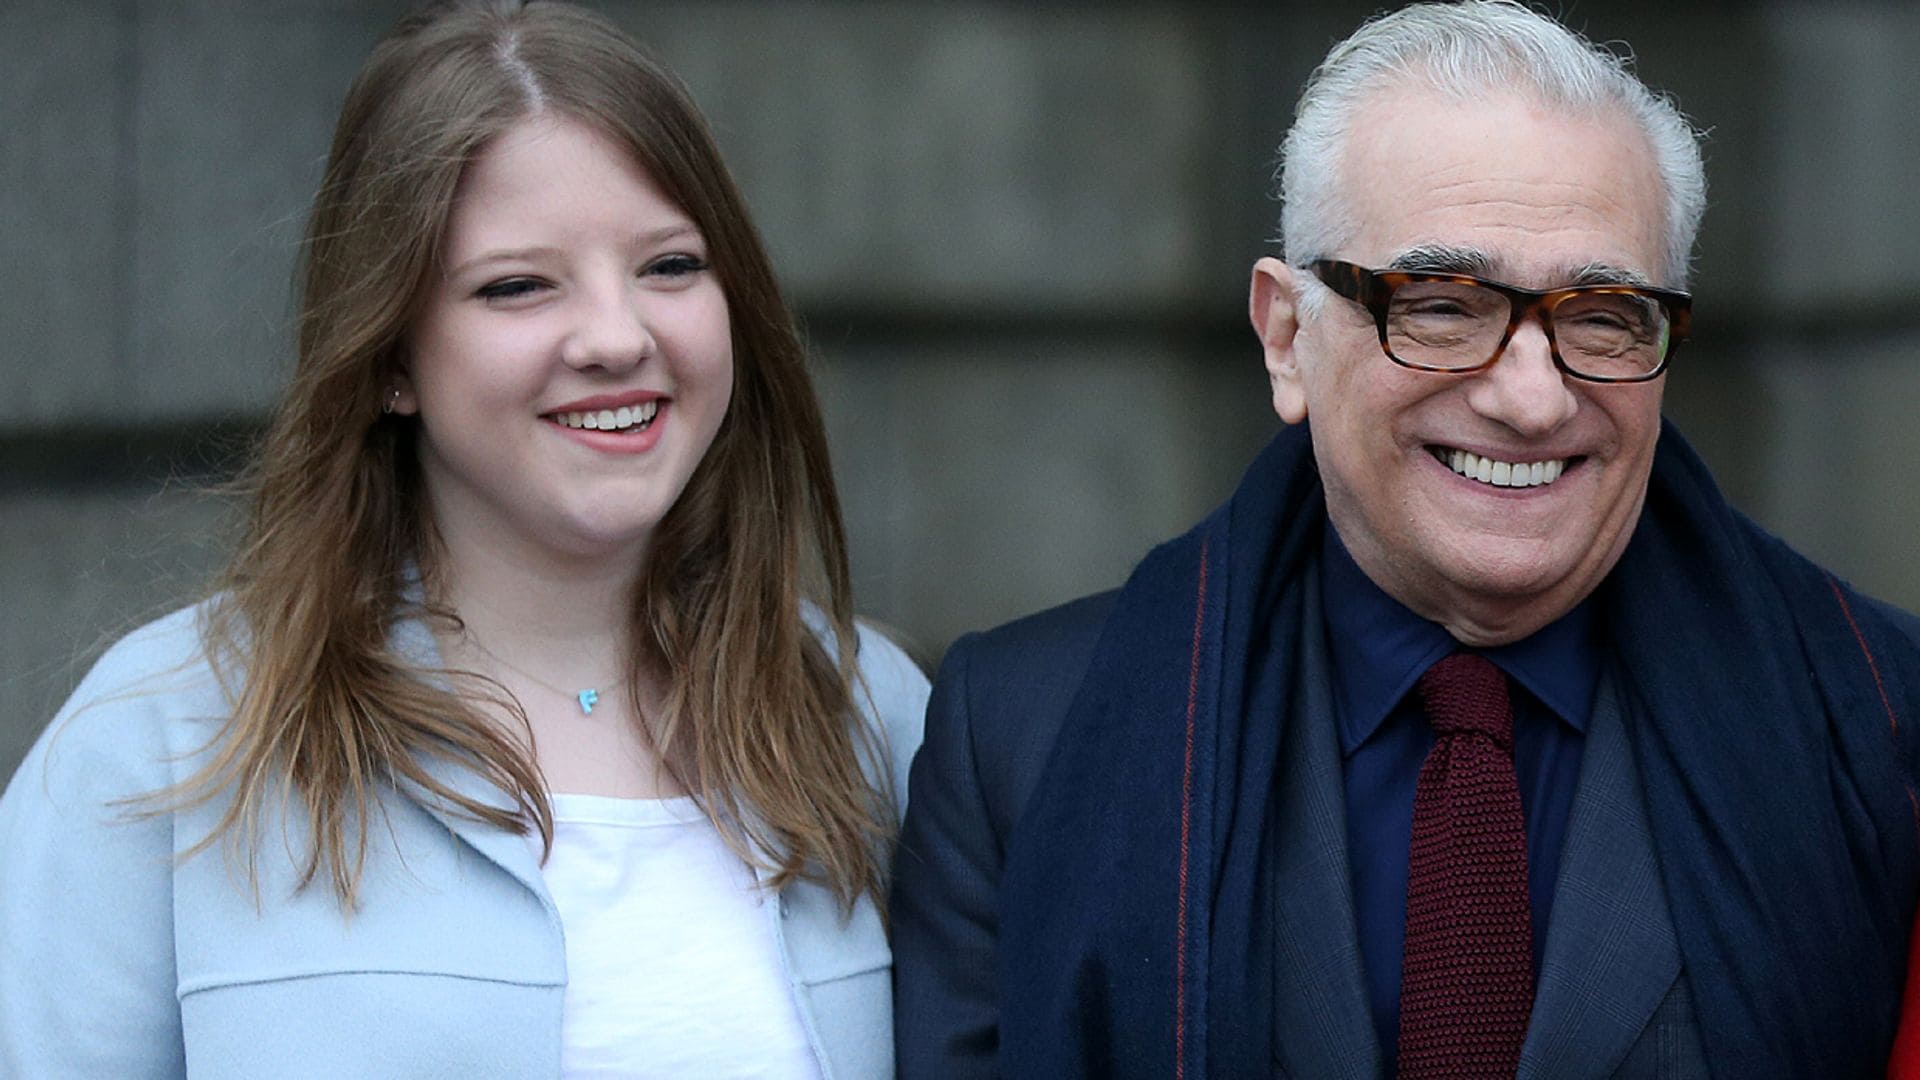 La hija veinteañera de Martin Scorsese que arrasa con sus divertidos vídeos junto a su padre